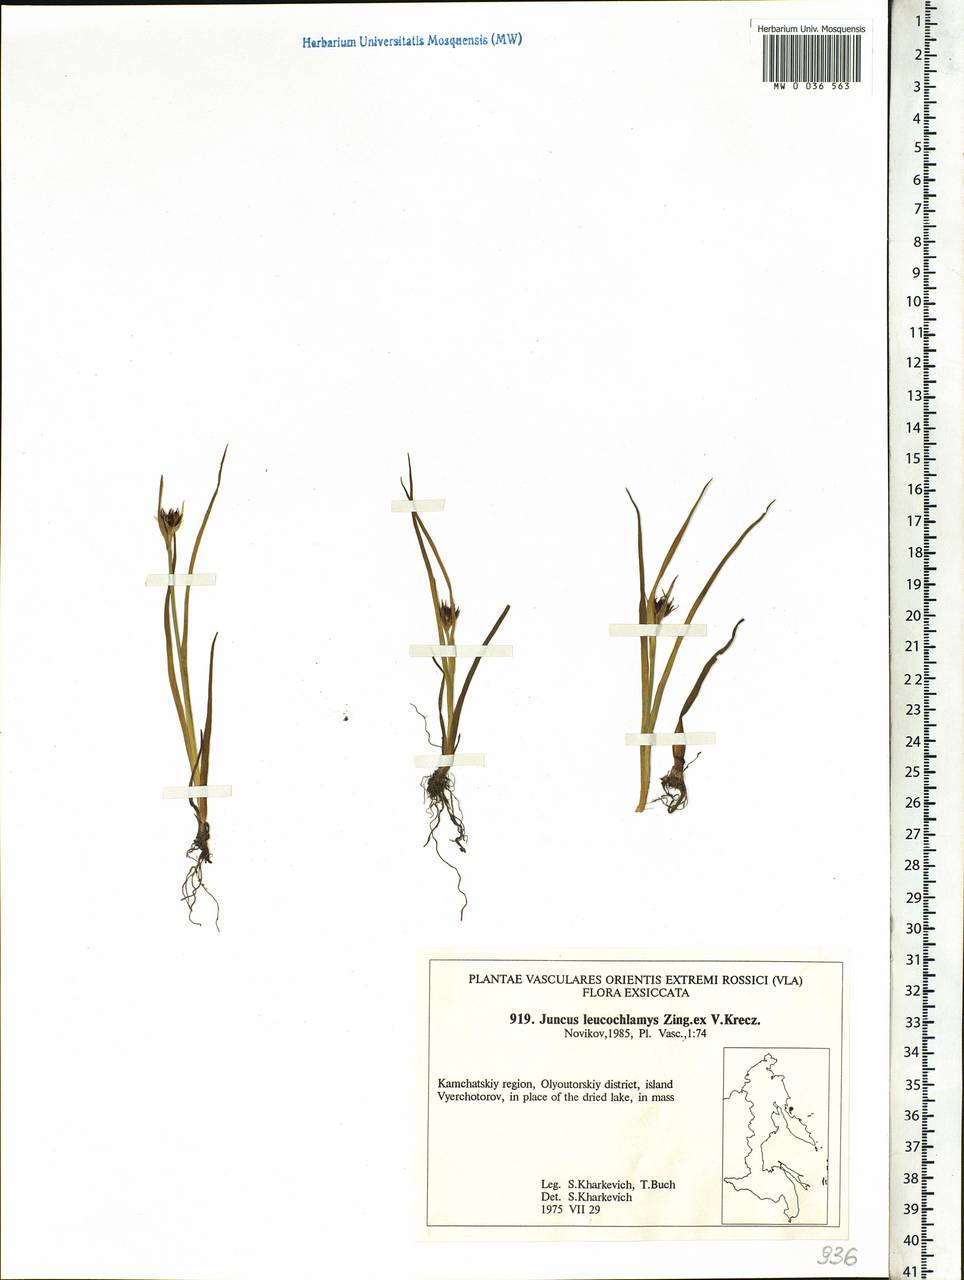 Juncus castaneus subsp. leucochlamys (V.J.Zinger ex V.I.Krecz.) Hultén, Siberia, Chukotka & Kamchatka (S7) (Russia)